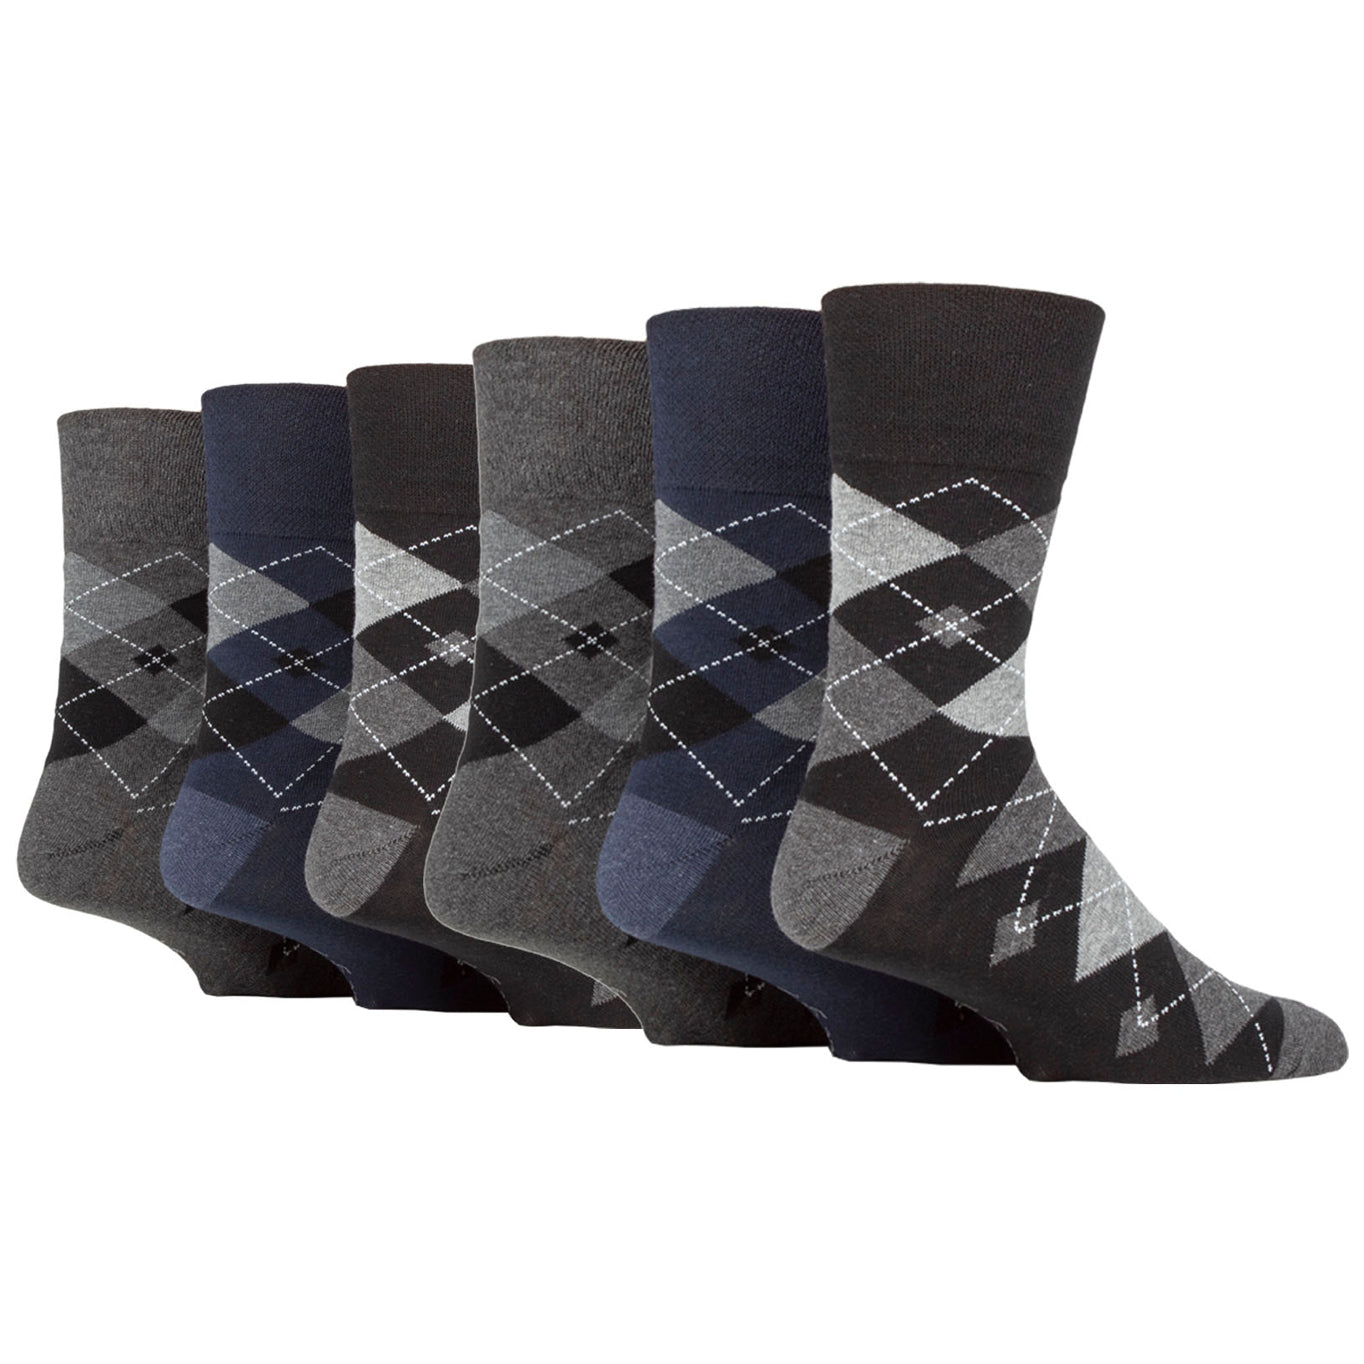 6 Pairs Men's Gentle Grip Argyle Cotton Socks - Leven Black/Navy/Charcoal